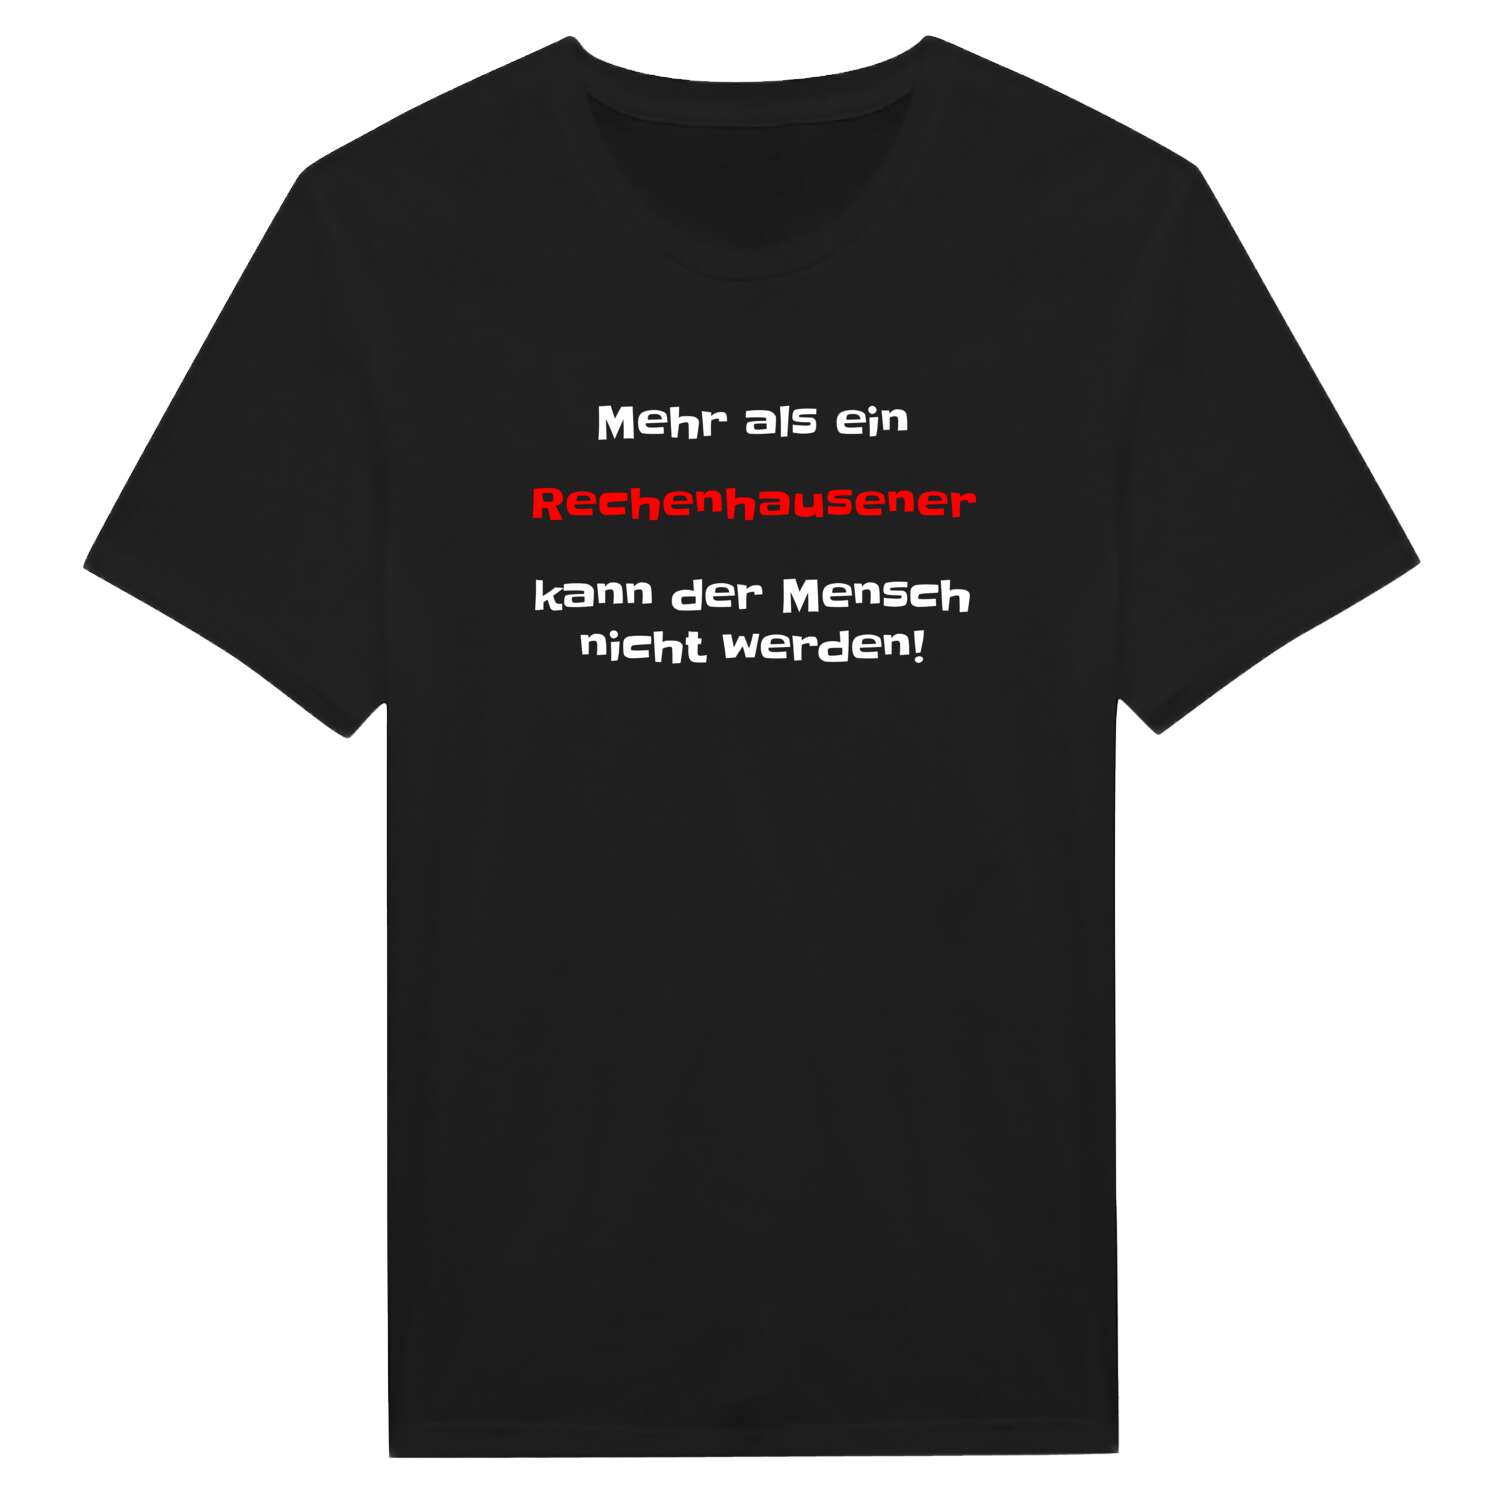 Rechenhausen T-Shirt »Mehr als ein«